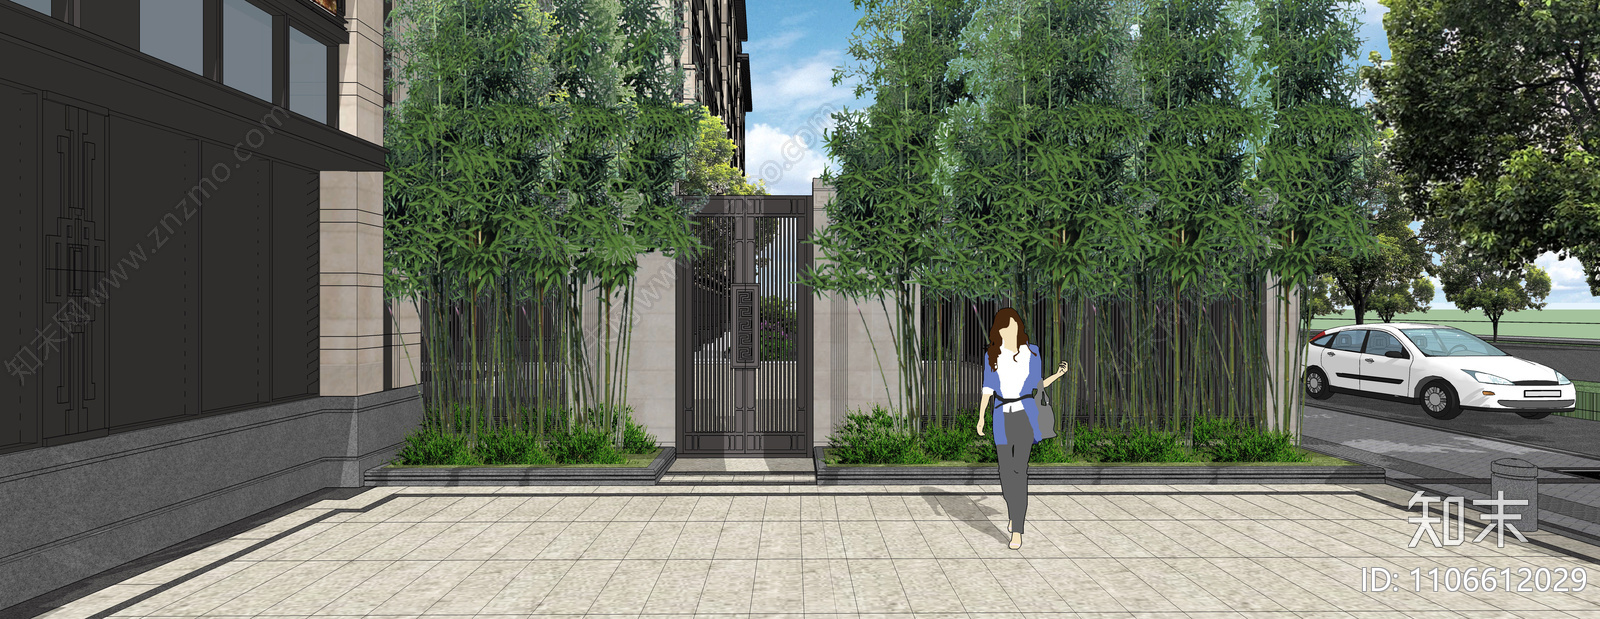 新中式住宅商业街景观su模型下载